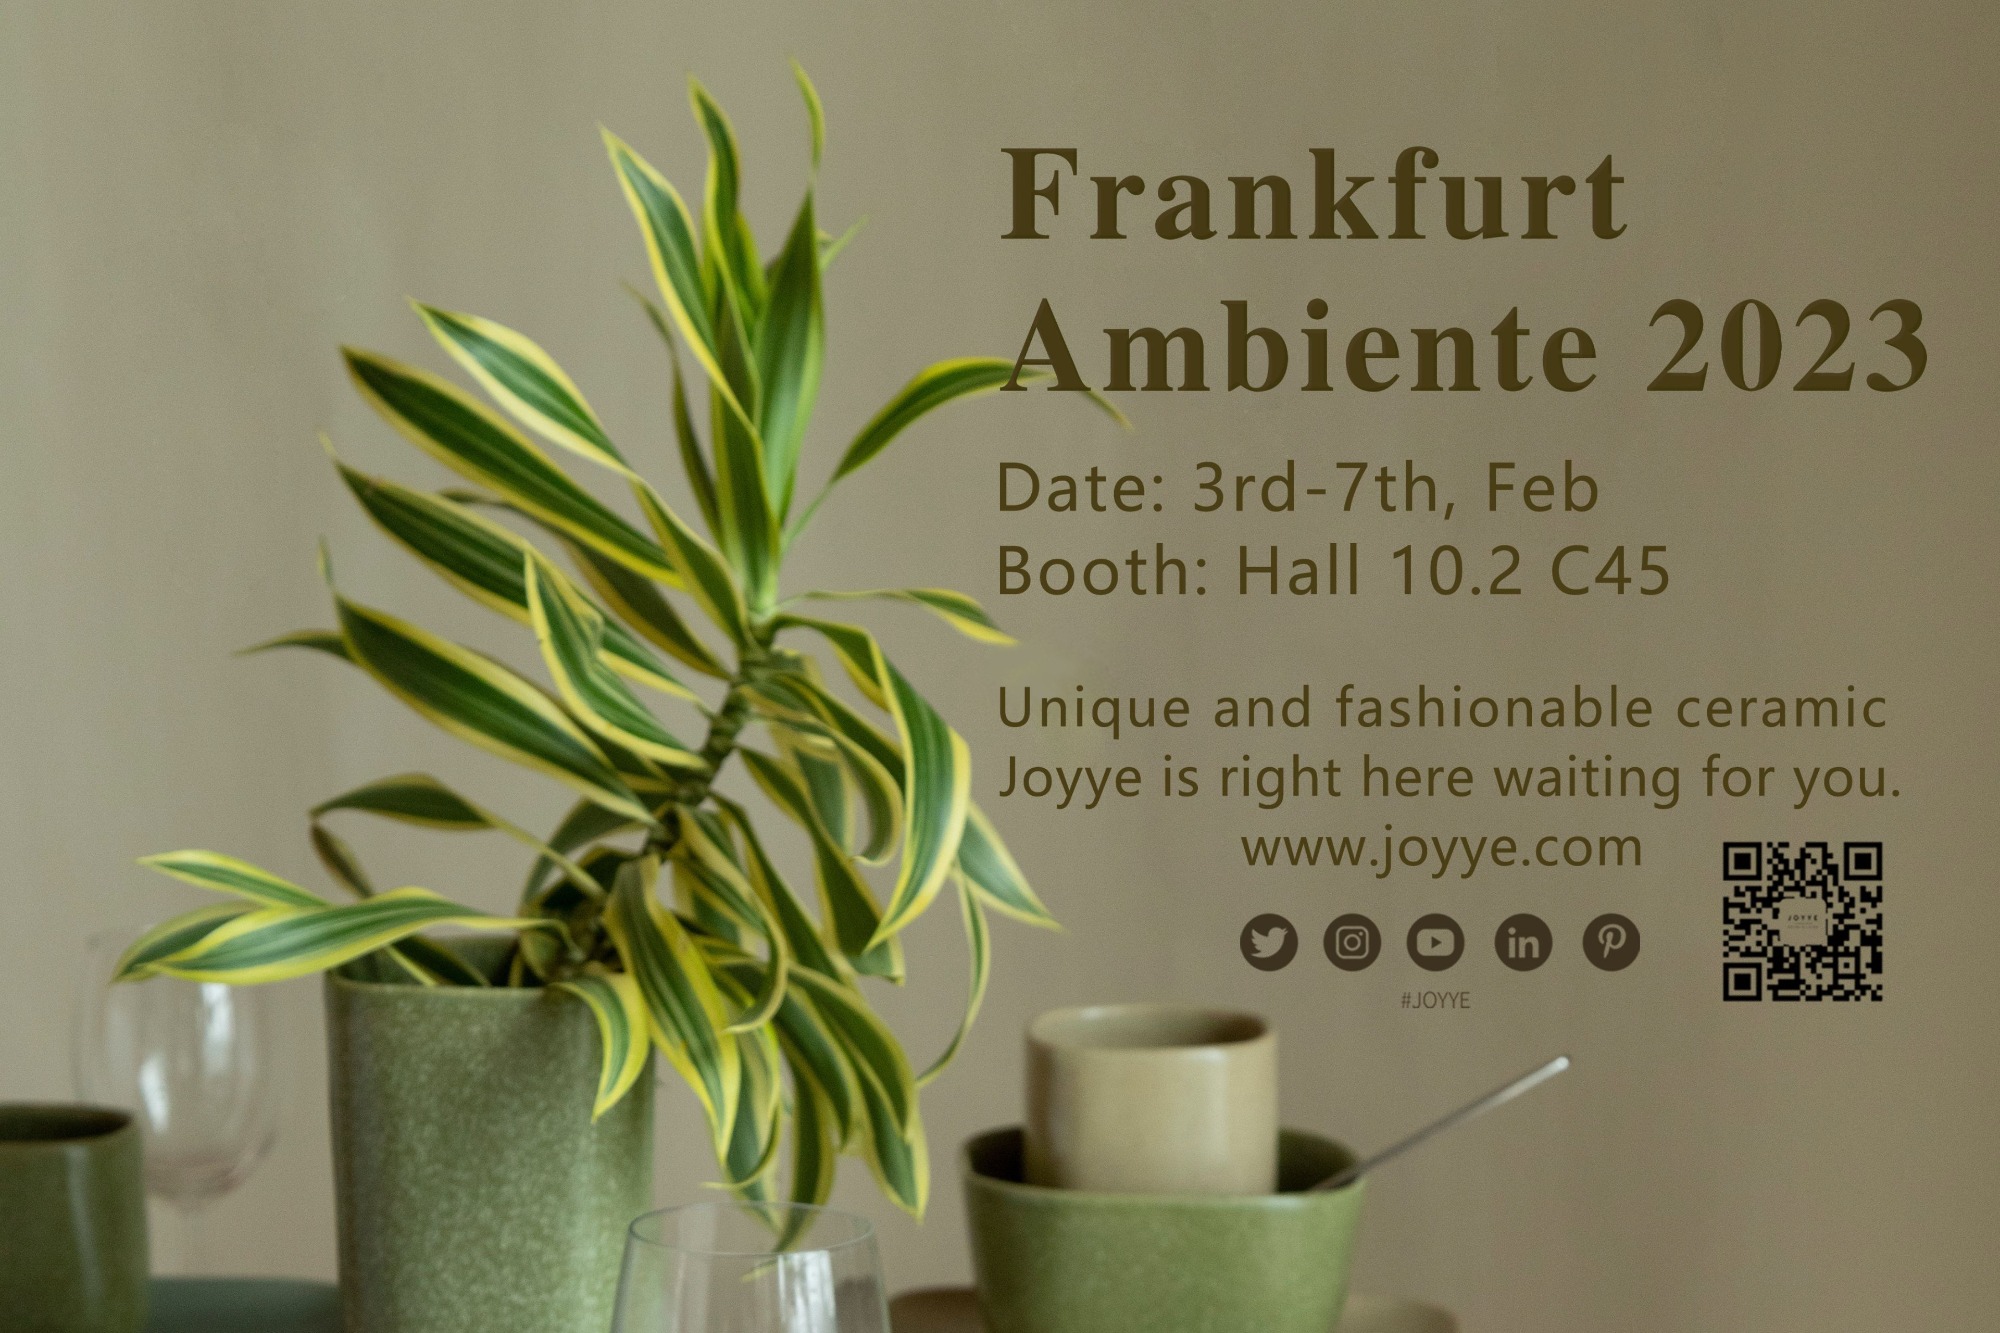 Joyye Frankfurt Ambiente 2023 Invitation